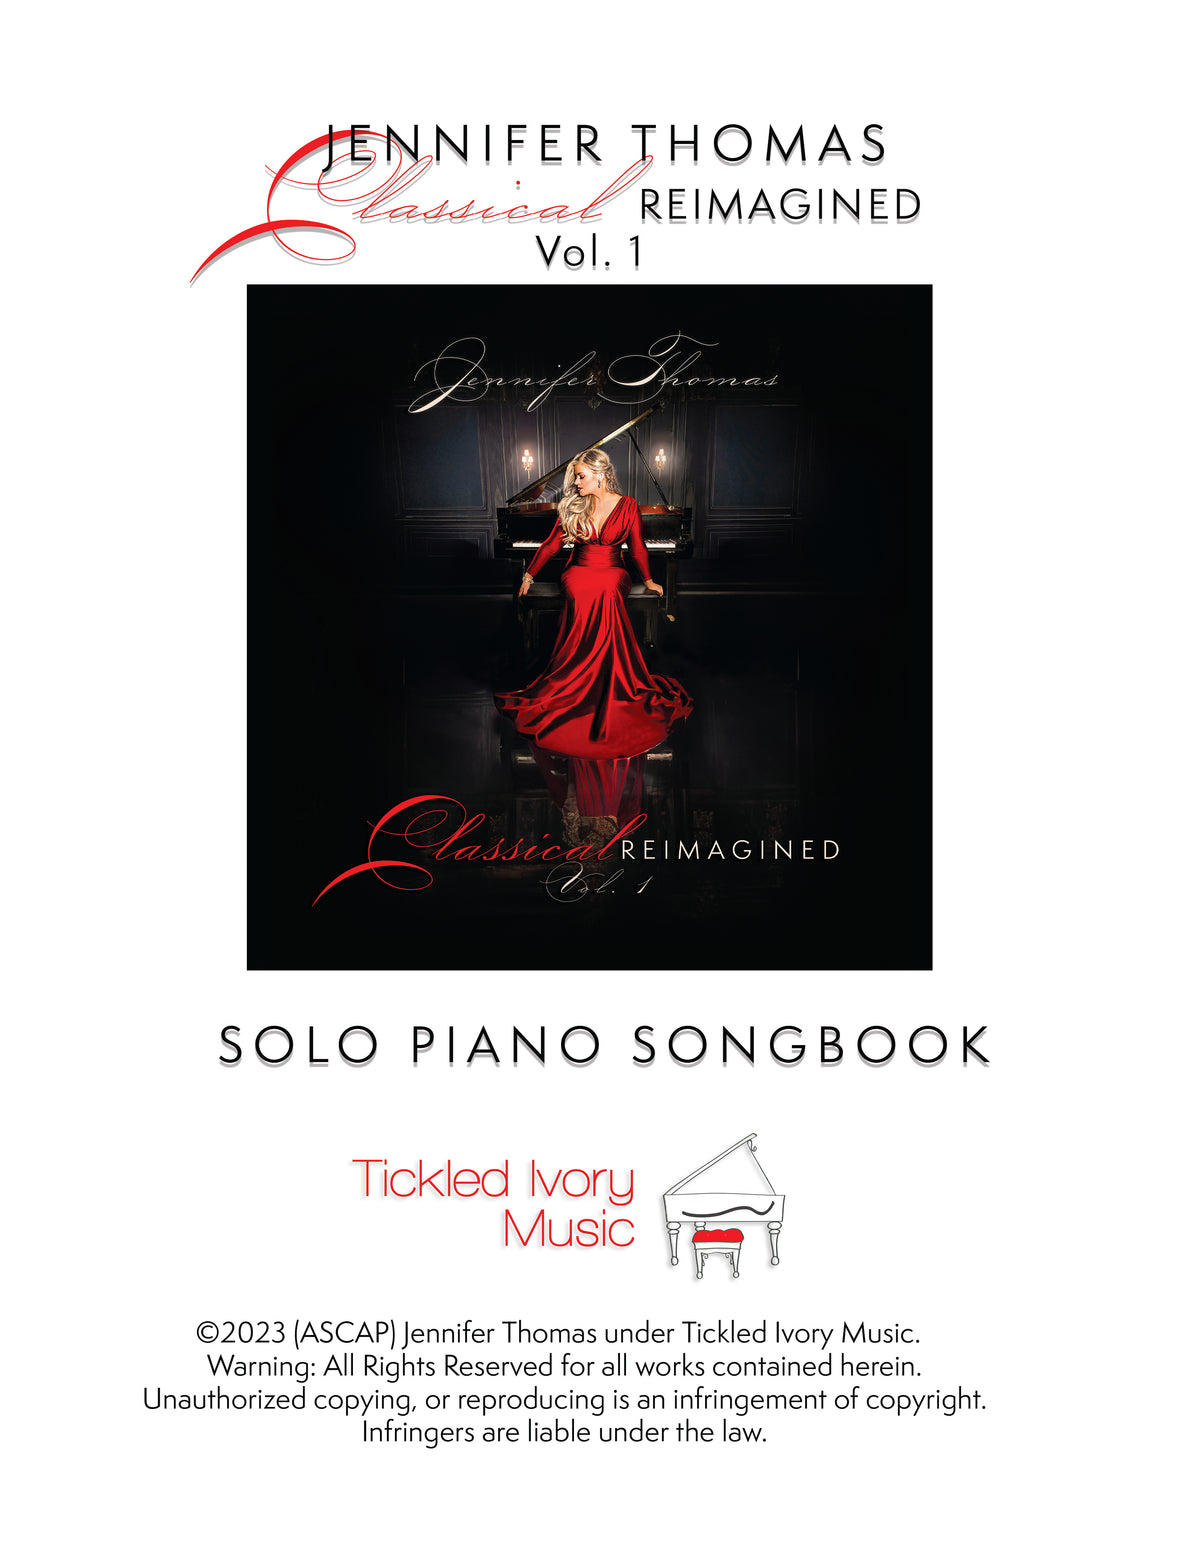 クラシック再考、Vol.ソロピアノ印刷ソングブック 1 冊